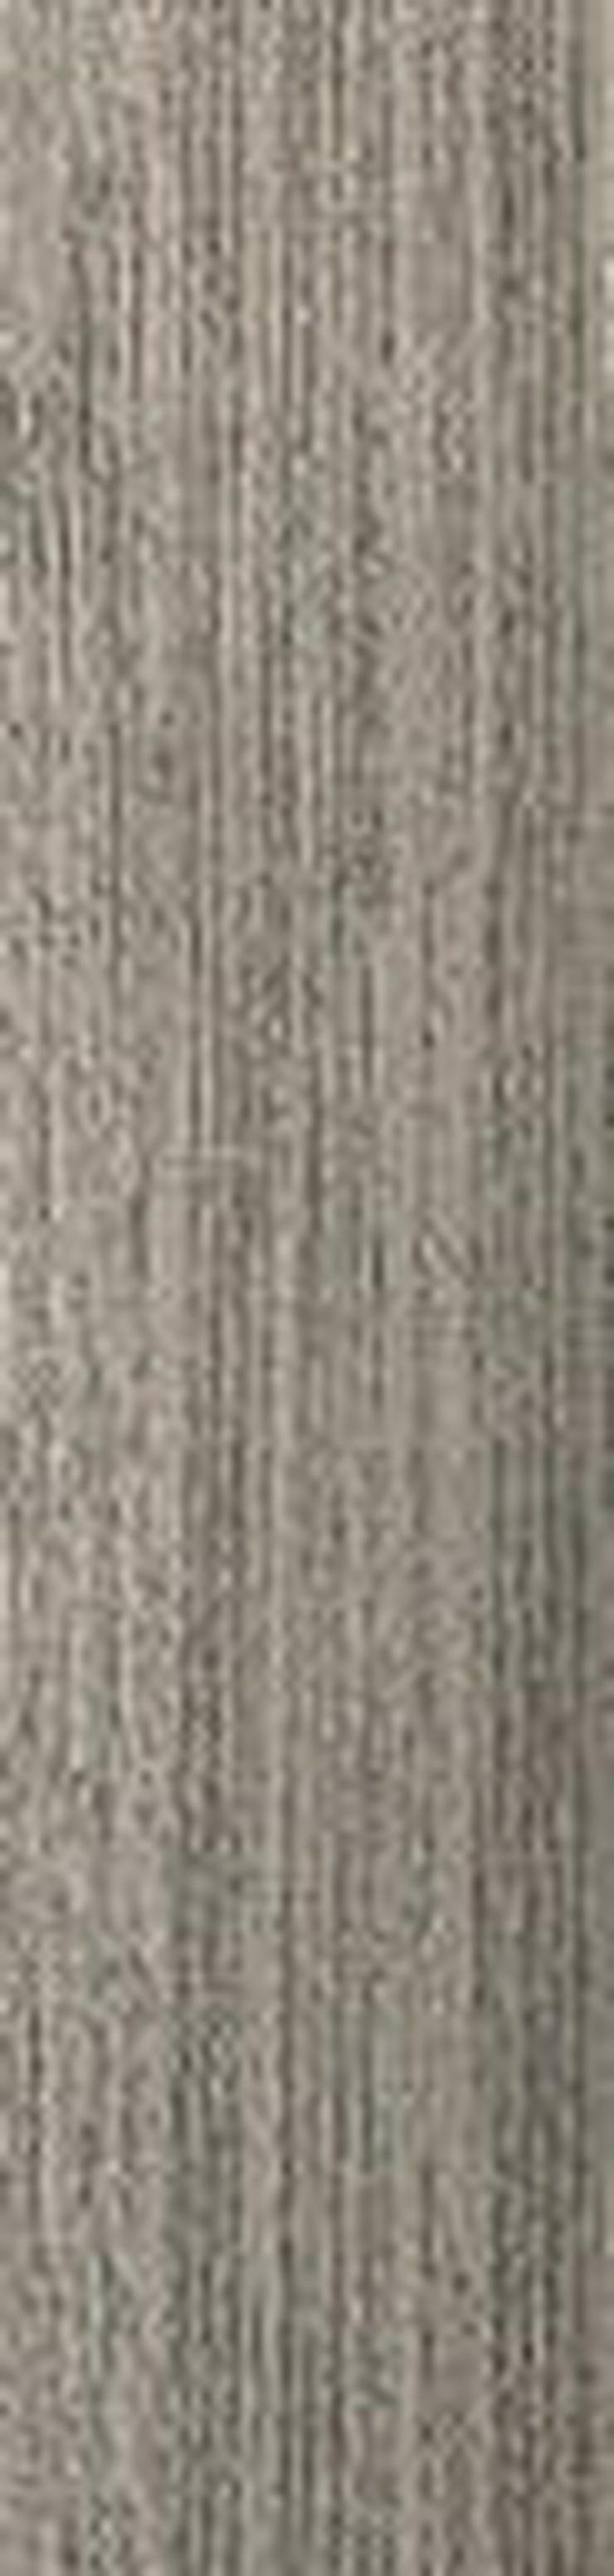 ANGEBOT Schöne 'Laminat' 25x100cm Teppichfliesen von Interface - Teppiche - Bild 1